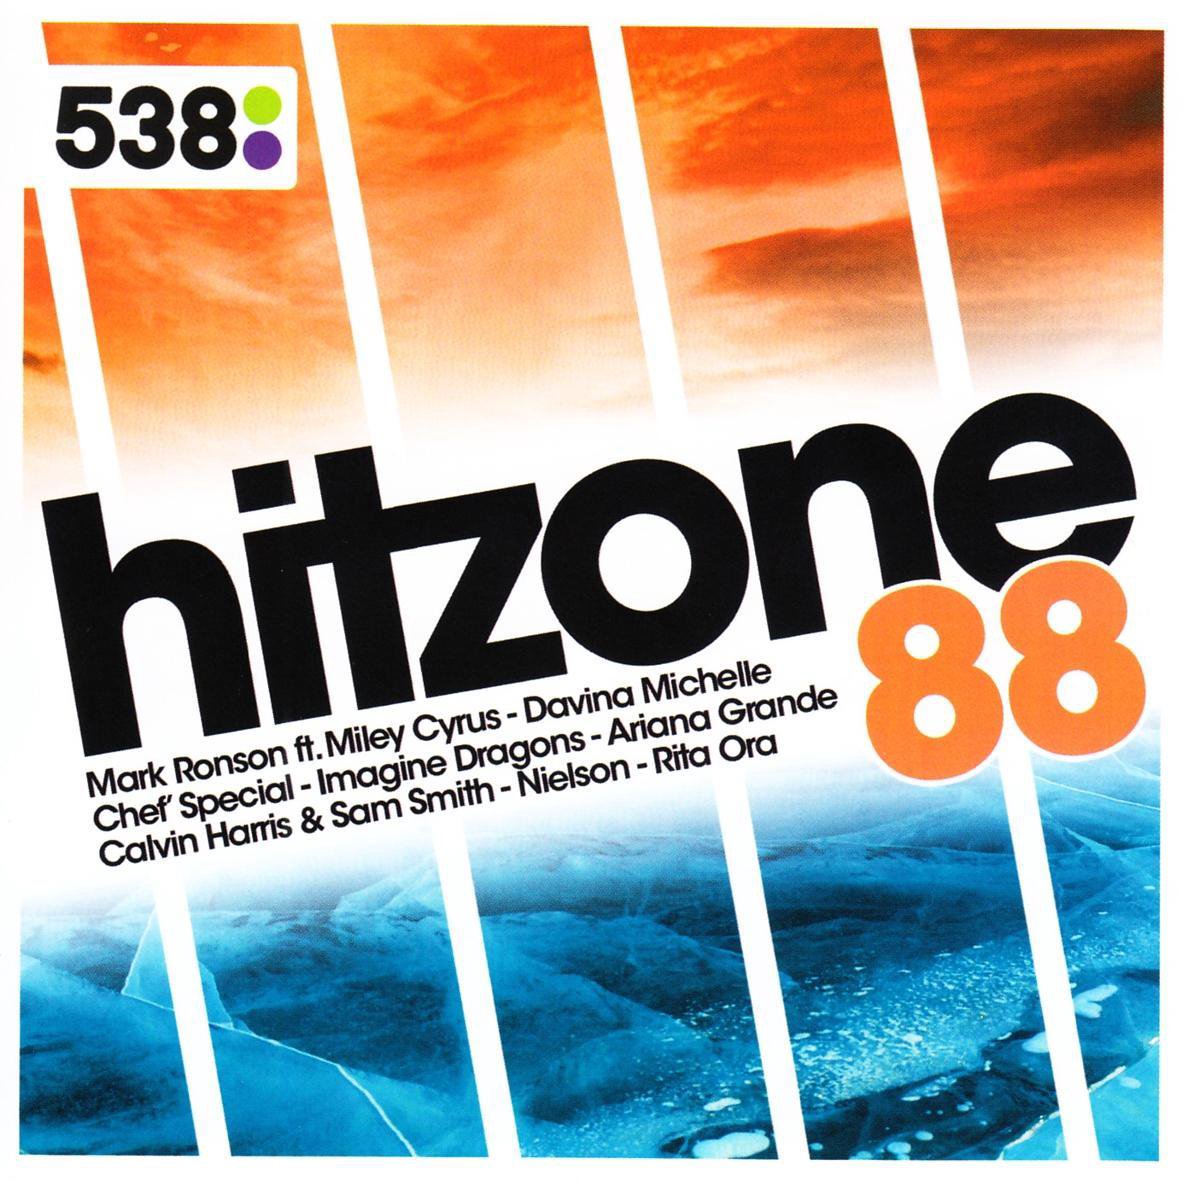 538 Hitzone 88 - Hitzone